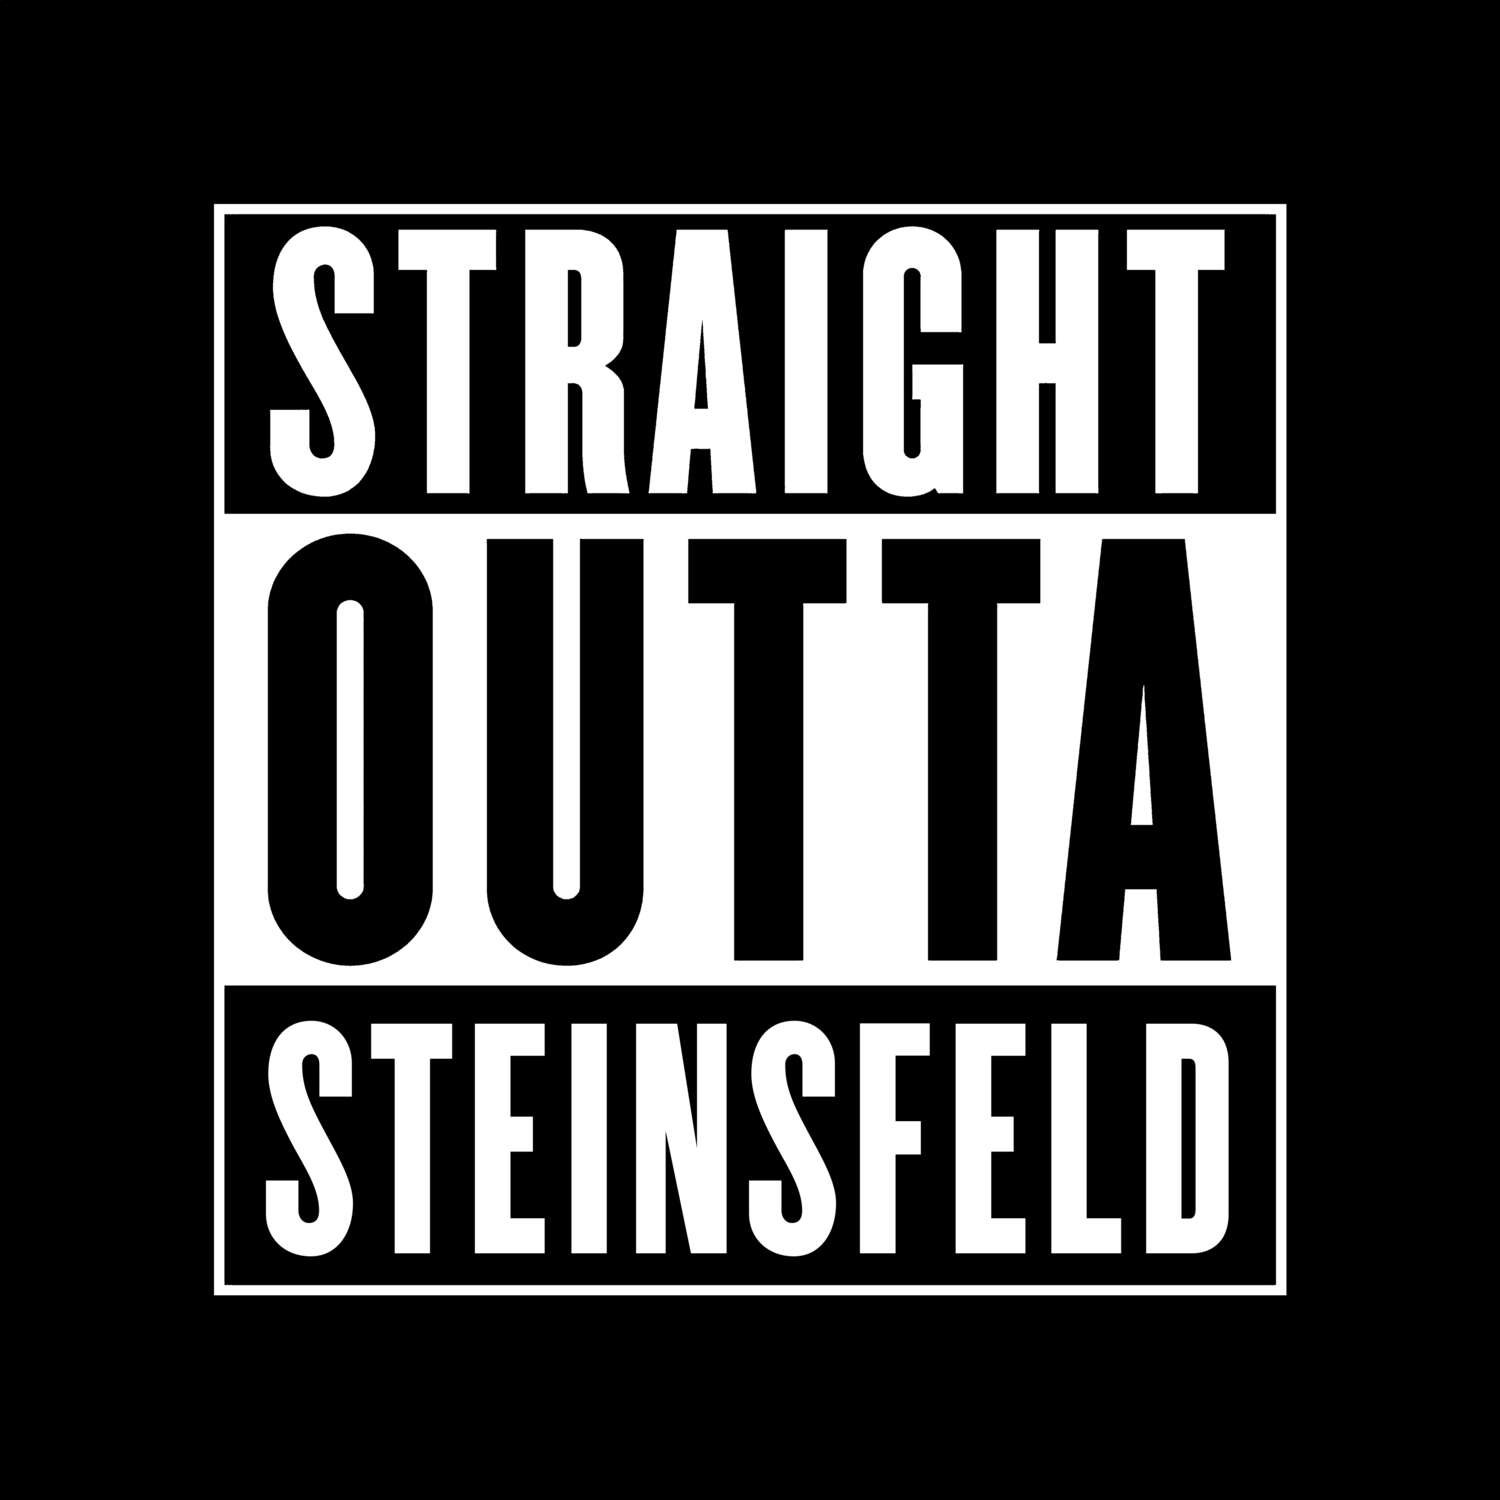 Steinsfeld T-Shirt »Straight Outta«